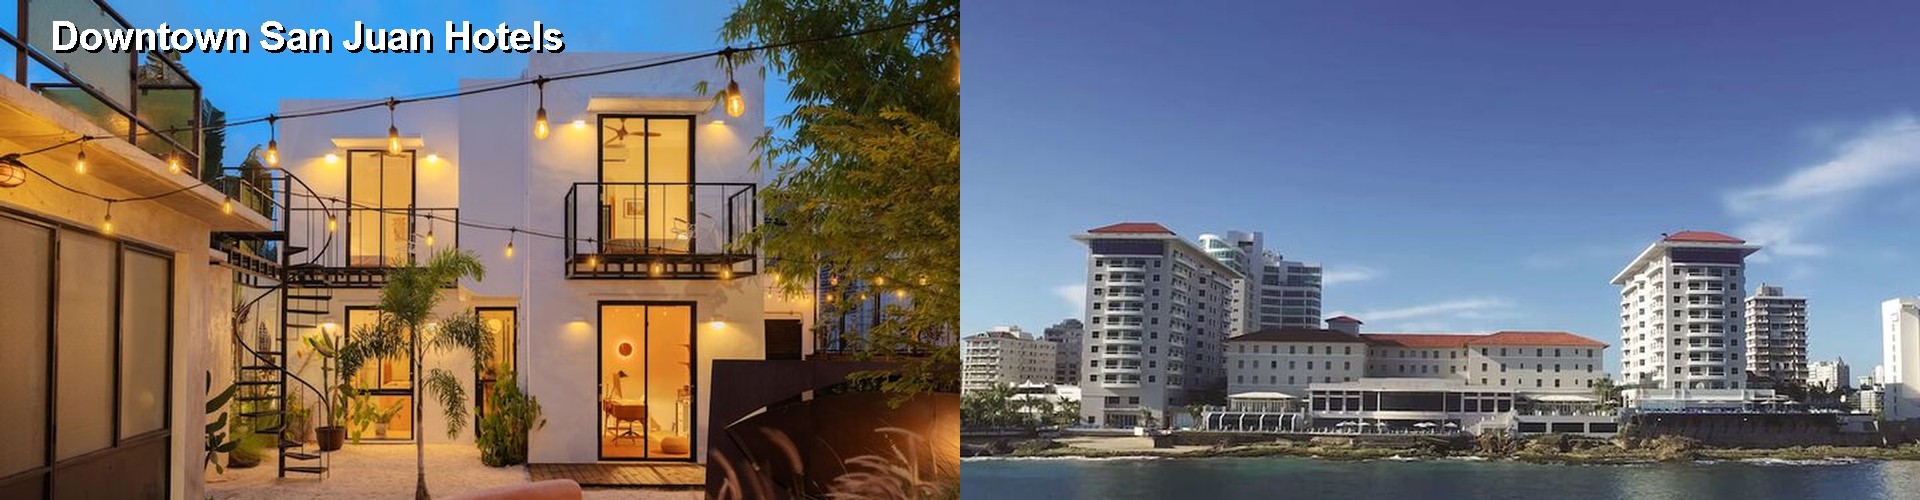 5 Best Hotels near Downtown San Juan